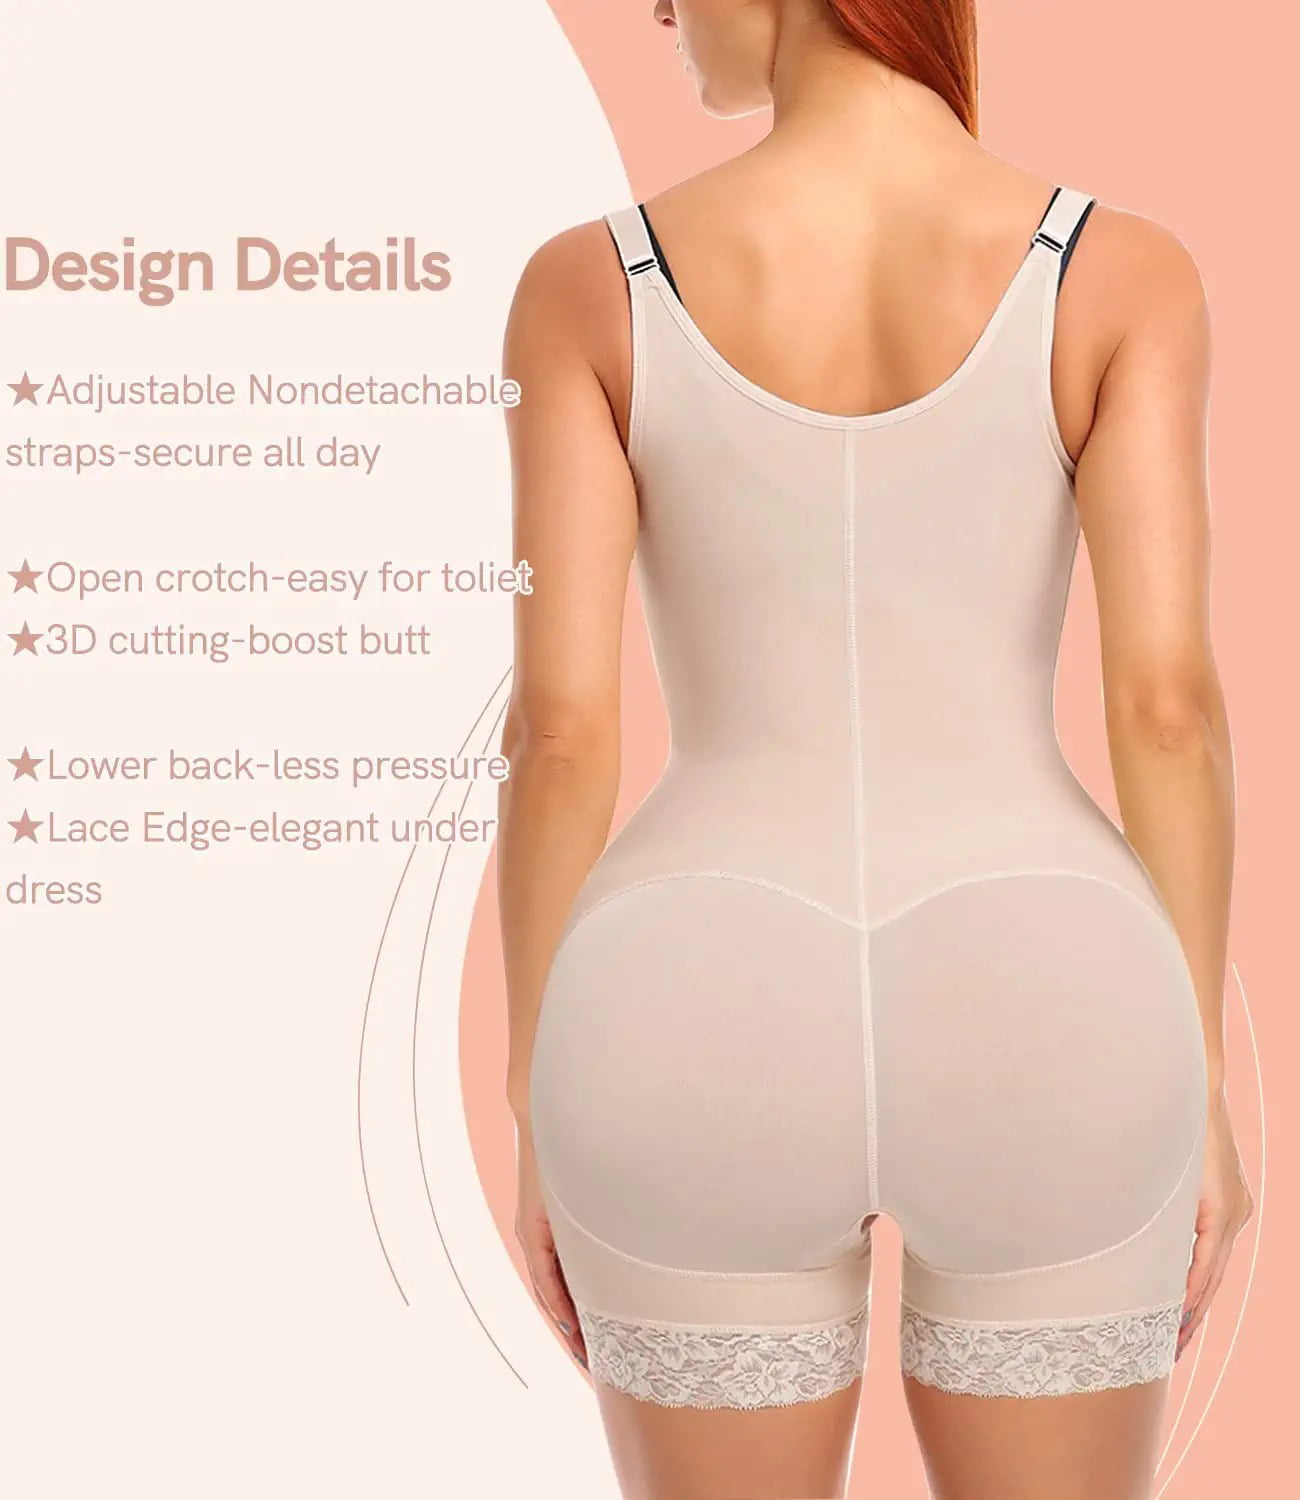 Buy ARANZA Faja Colombiana Reductora Modeladora Bodysuit with Bra